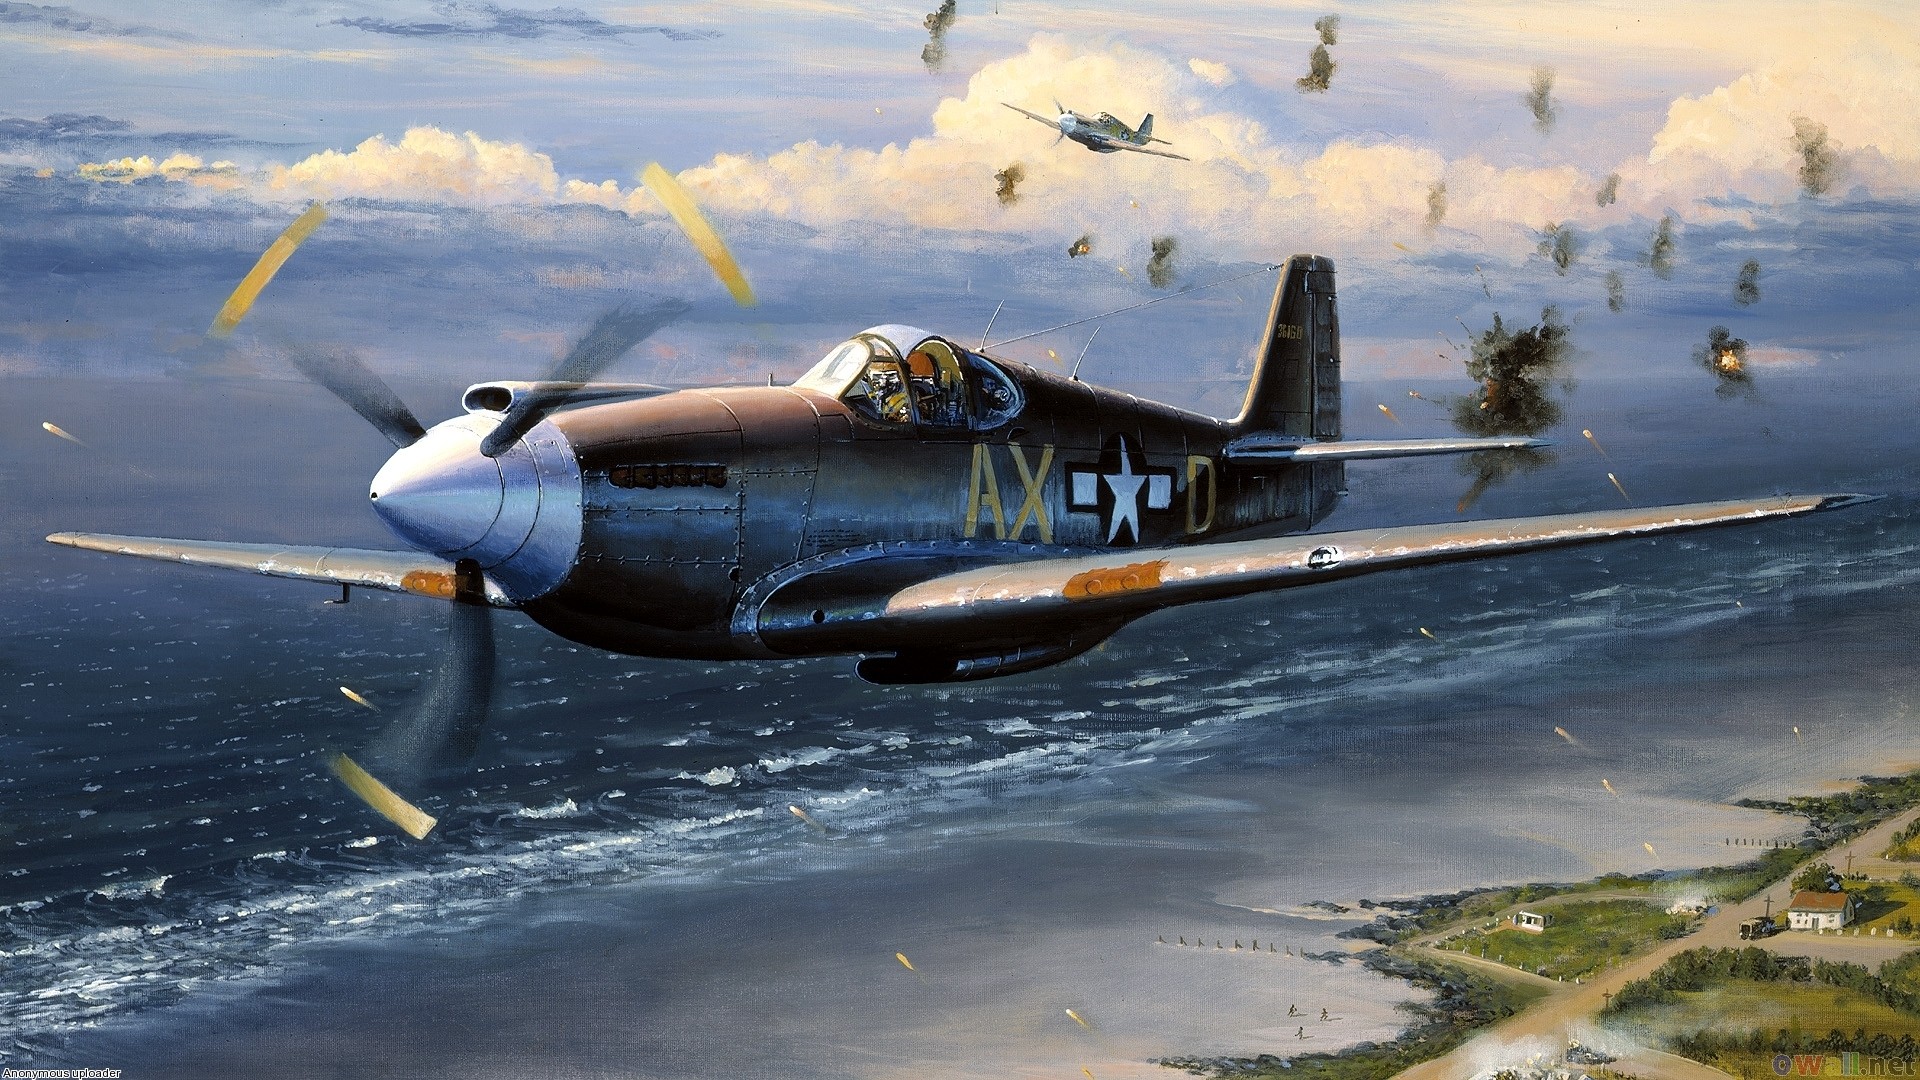 1920x1080 Ax - aircraft of world war ii wallpaper #17332 - Open Walls